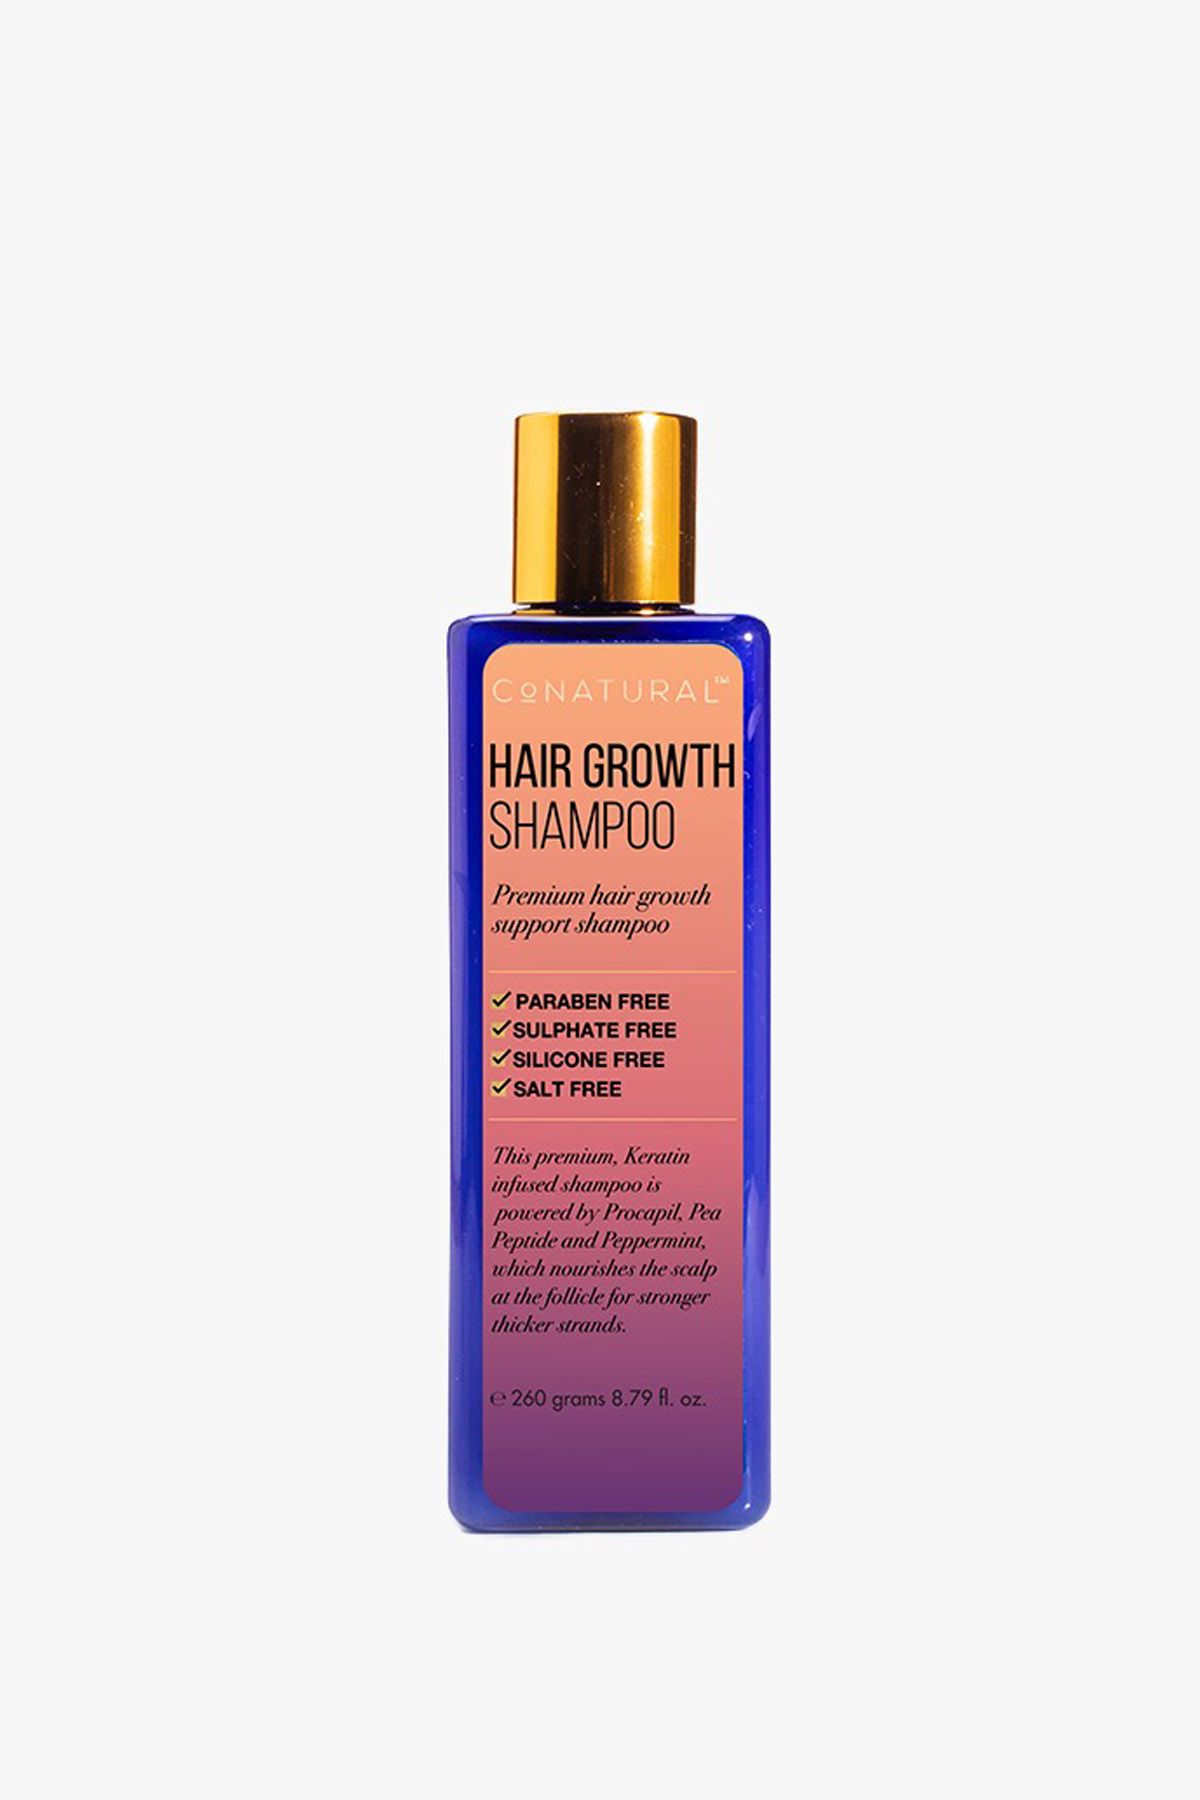 Hair Growth Shampoo